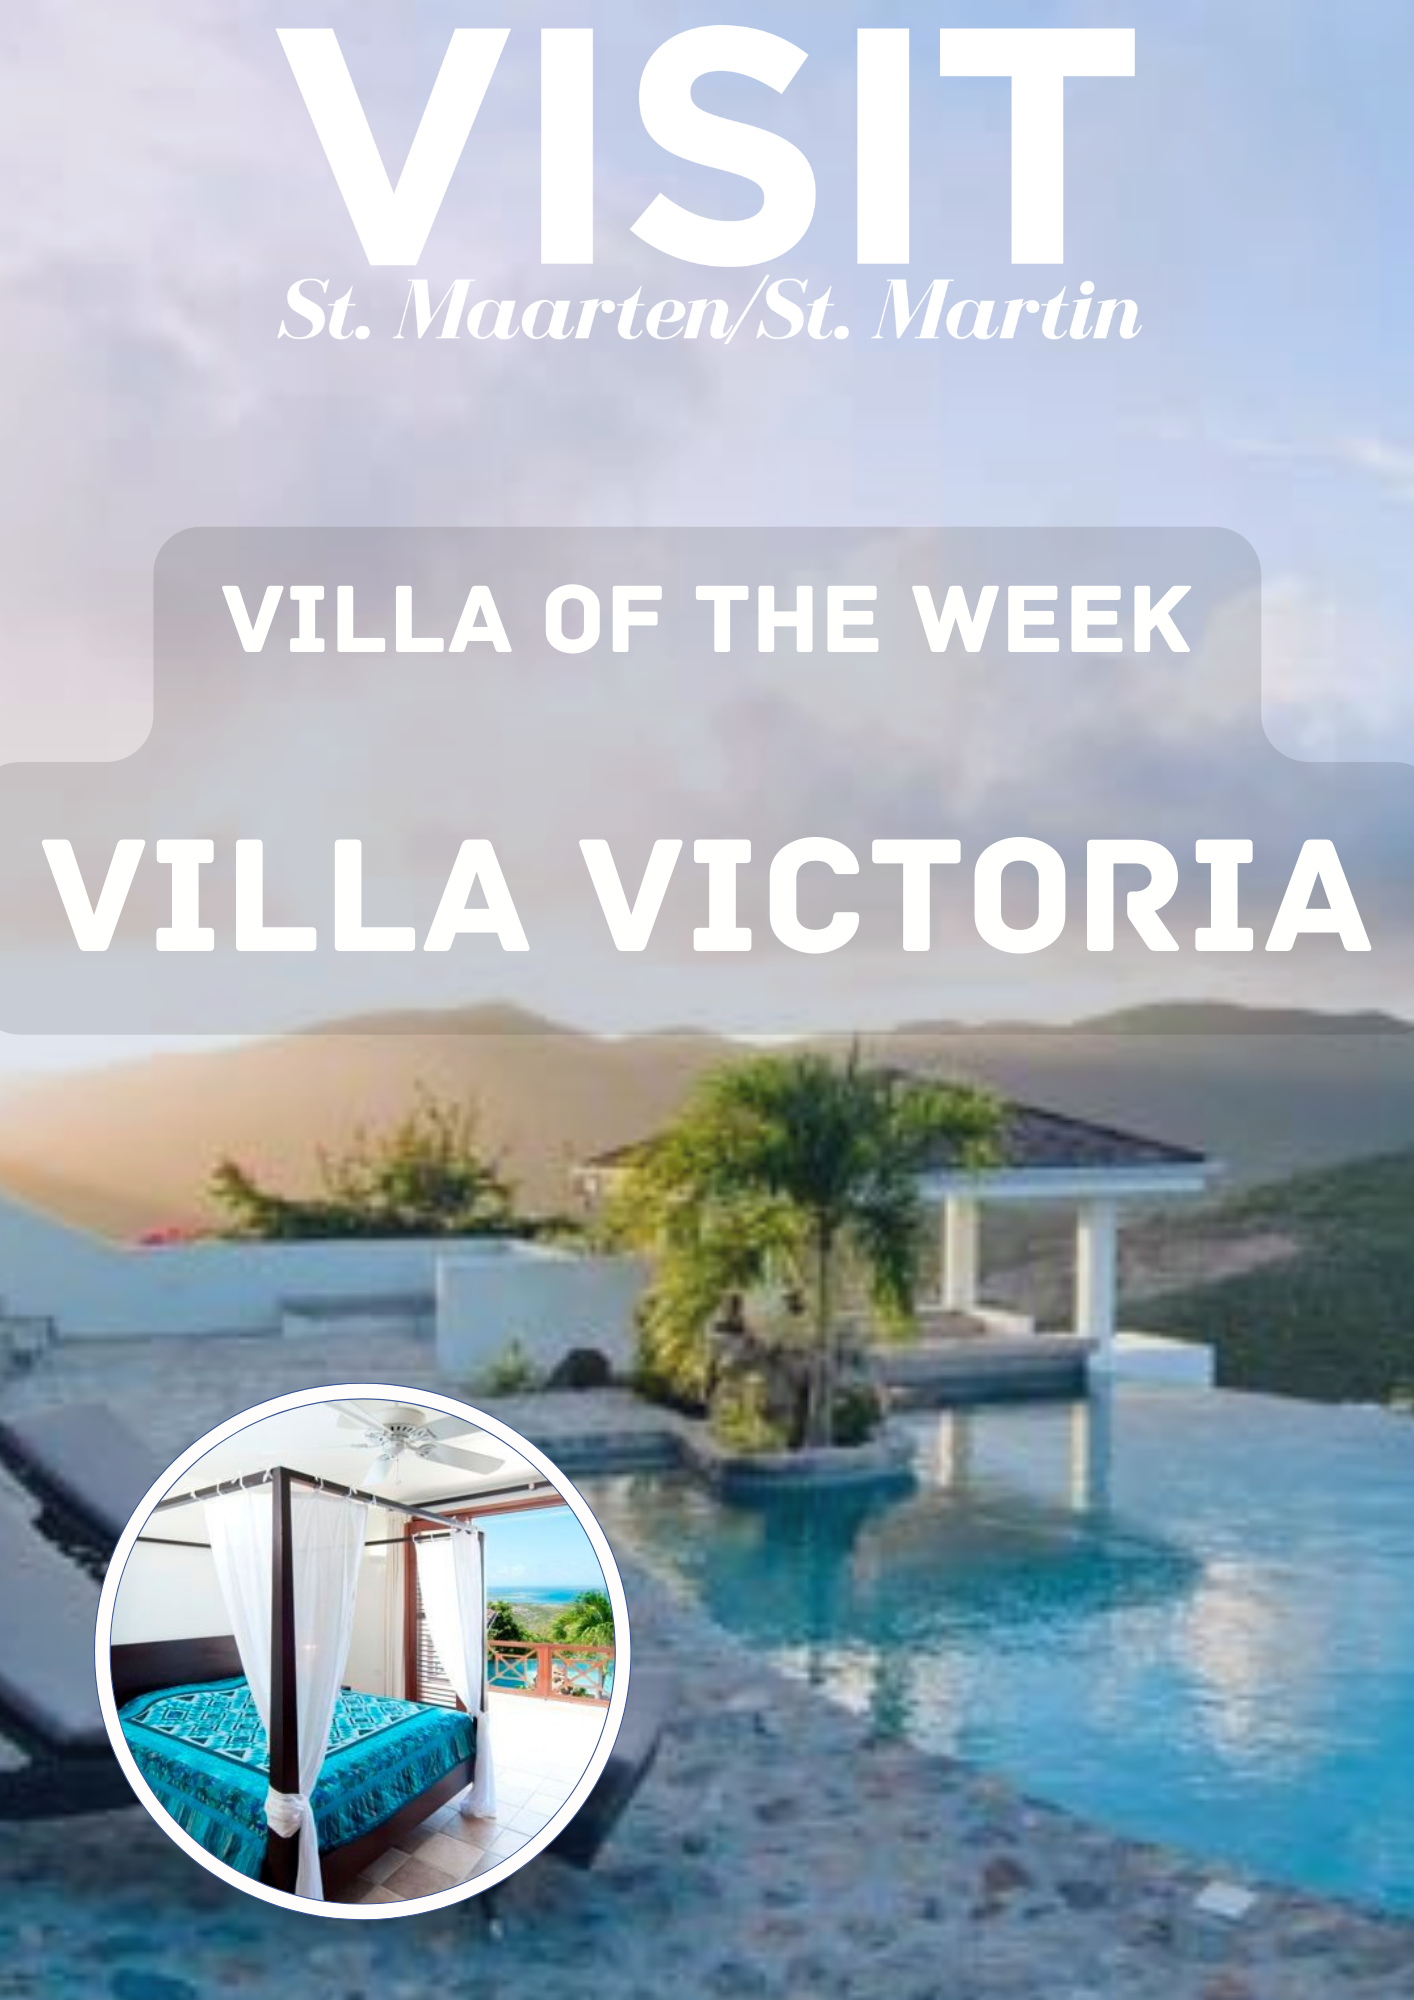 Villa Victoria, Villa of the week, French Side, Dutch Side, St Maarten currency, Flights to St Maarten, St Martyn